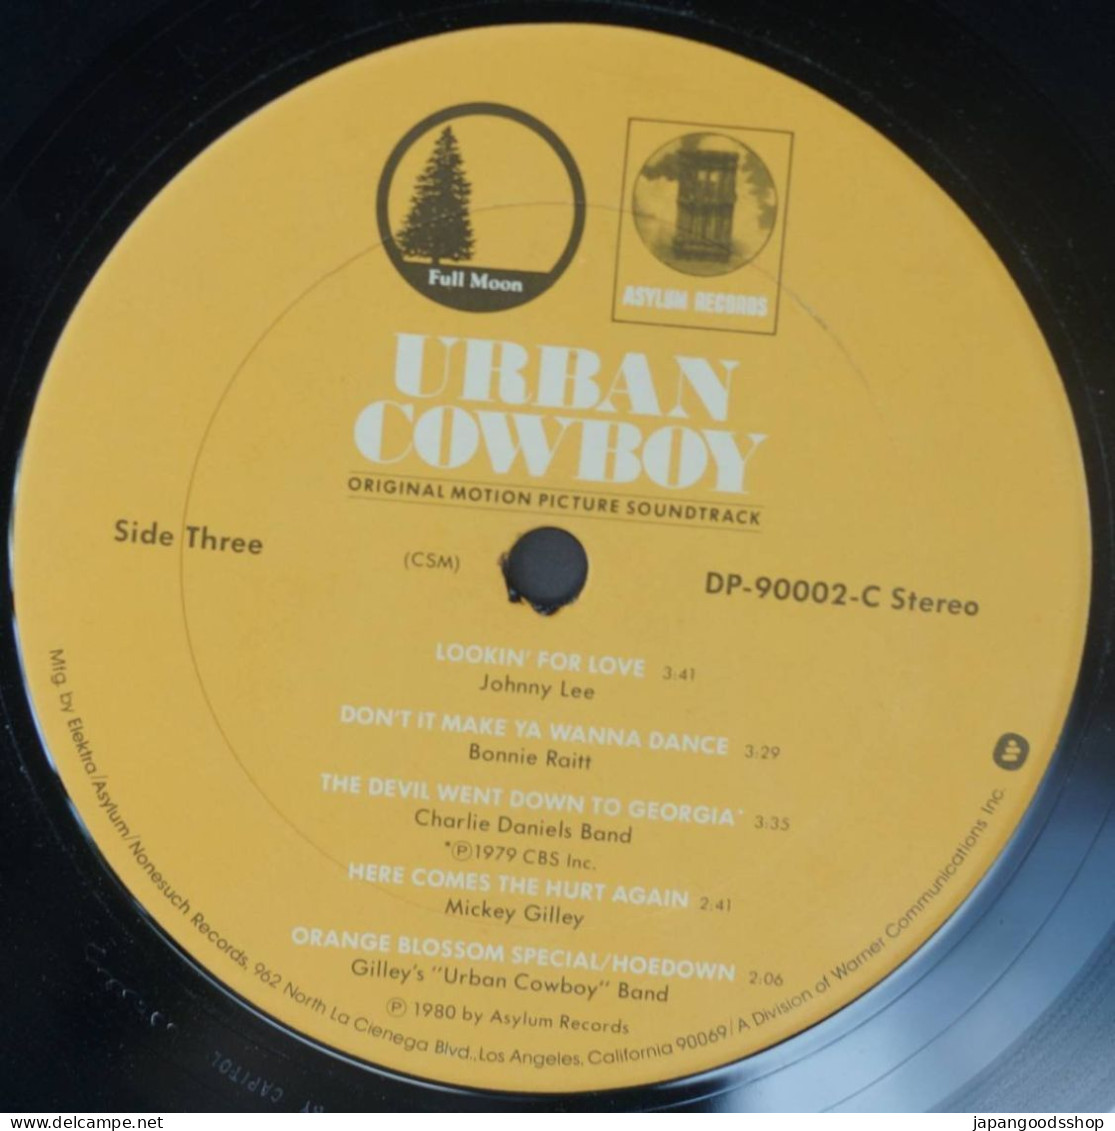 Vinyl LP : Urban Cow Boy OST ( Asylum Records DP-90002 )